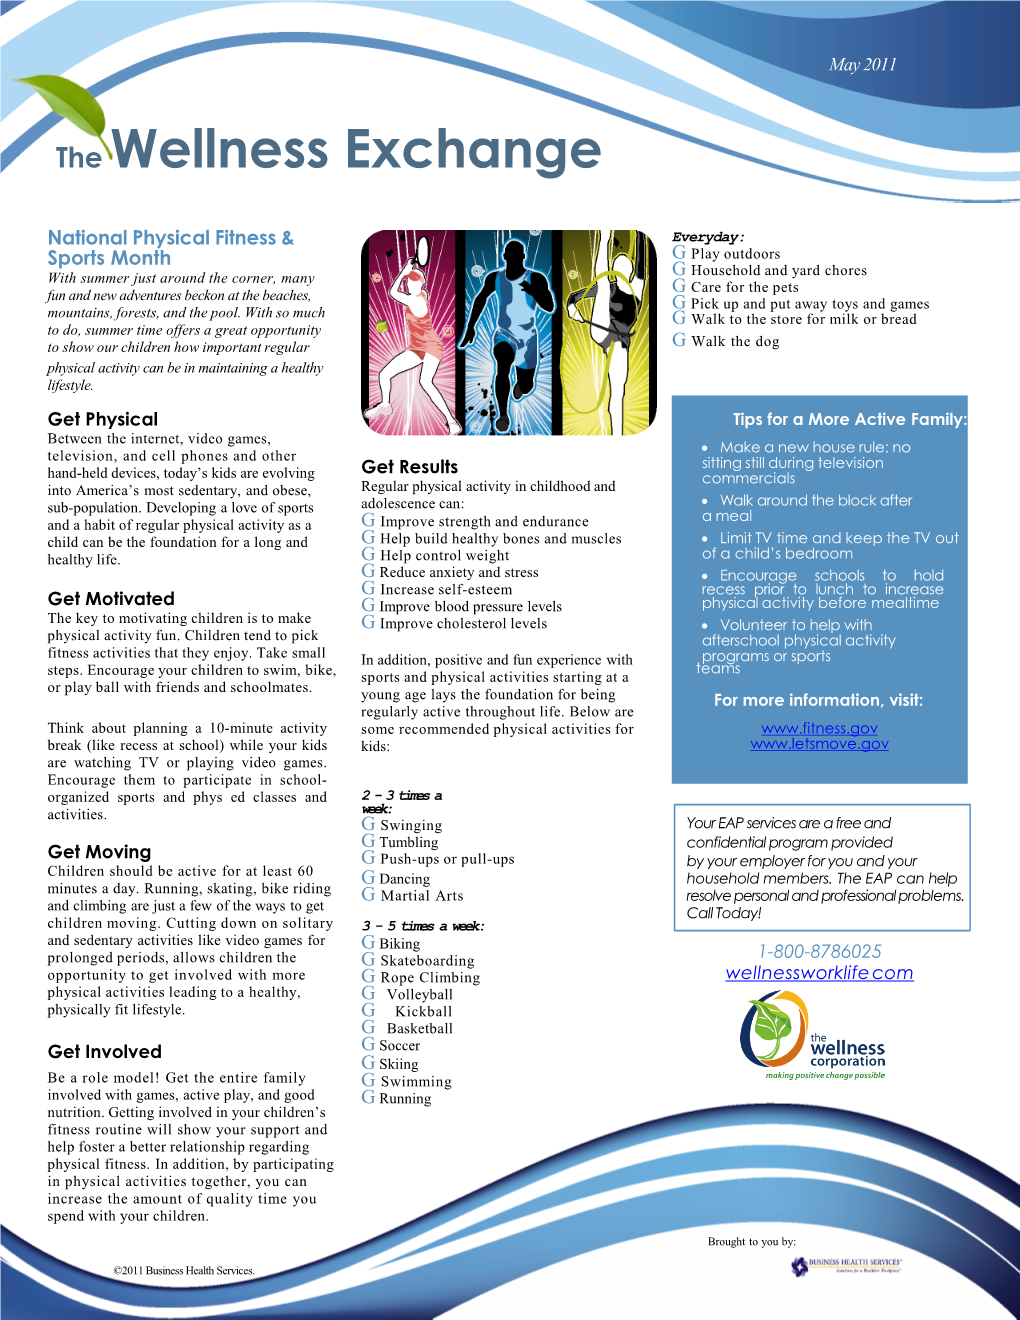 The Wellness Exchange